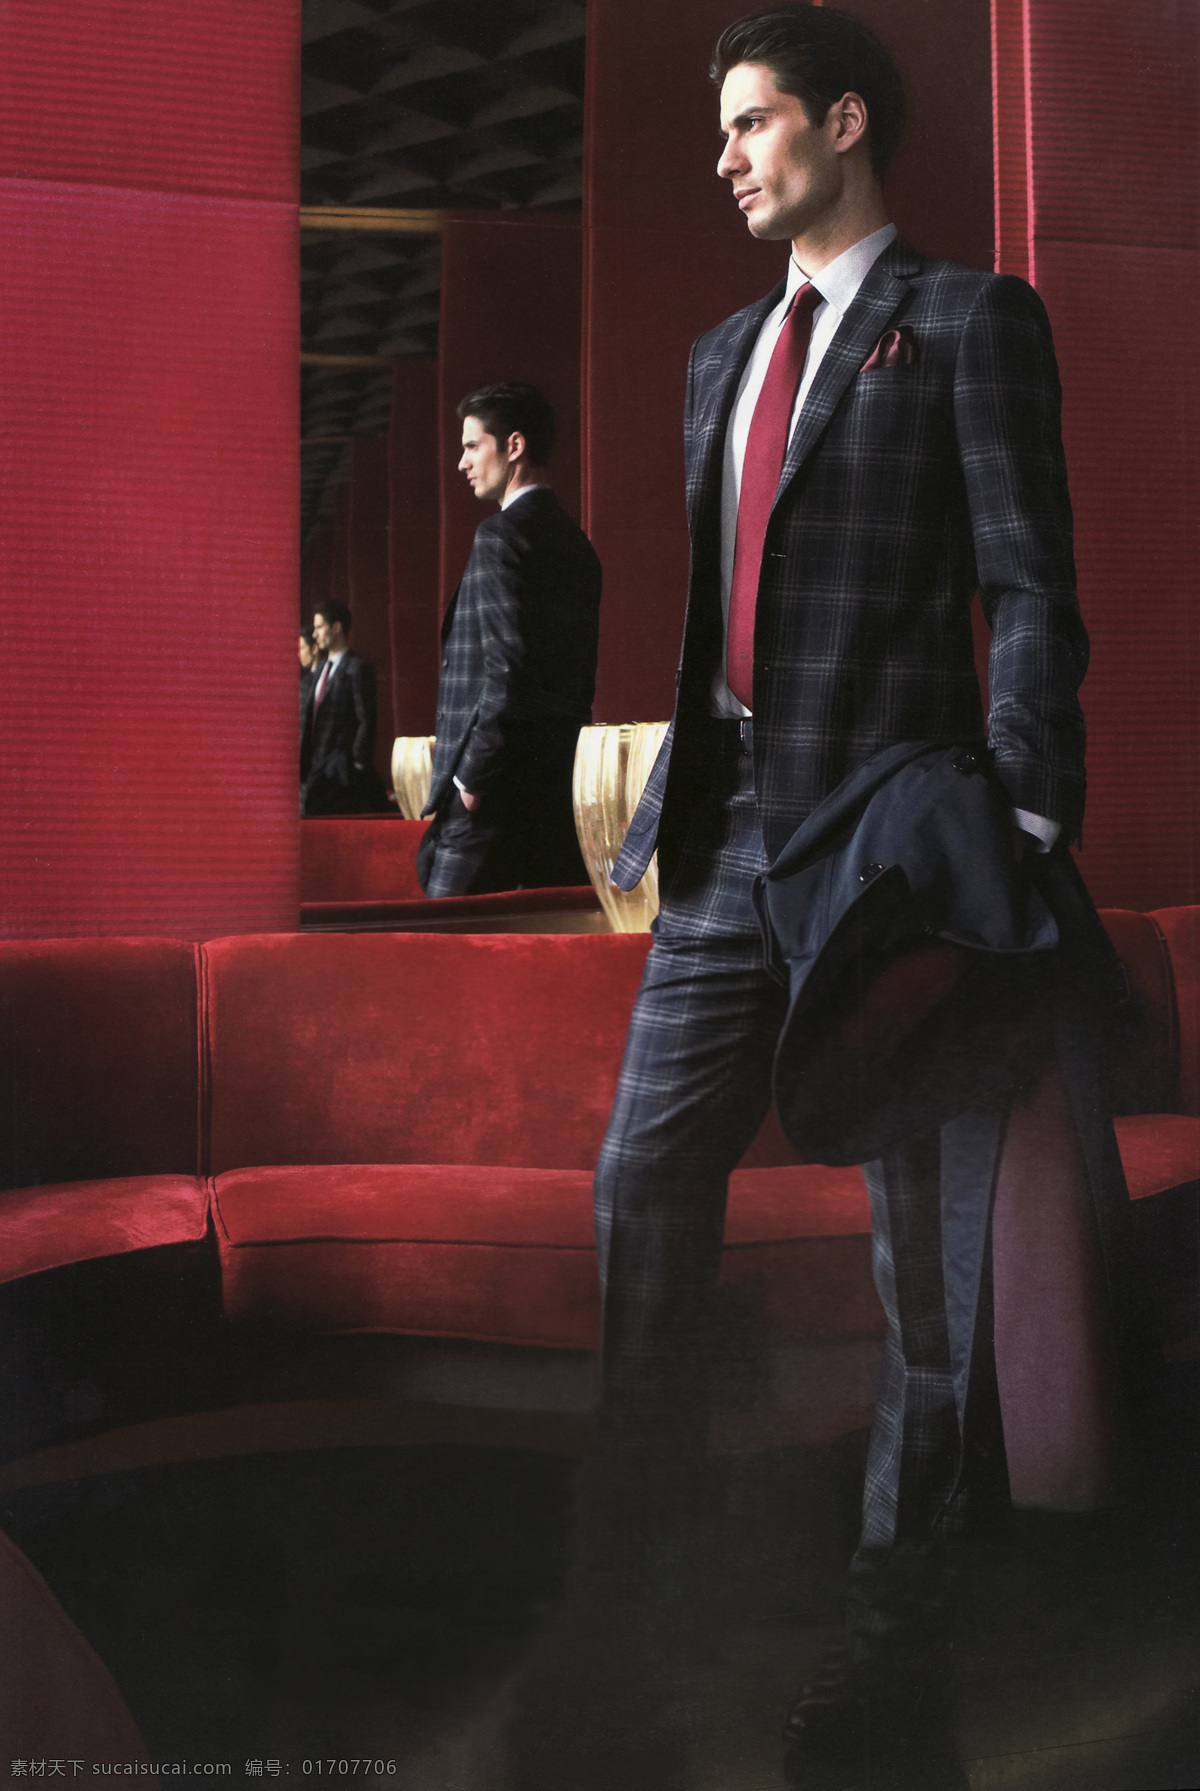 气质职业男性 气质 西装 男性 男人 领带 格子 红色 沙发 欧式 时尚 时装 地产 男性男人 人物图库